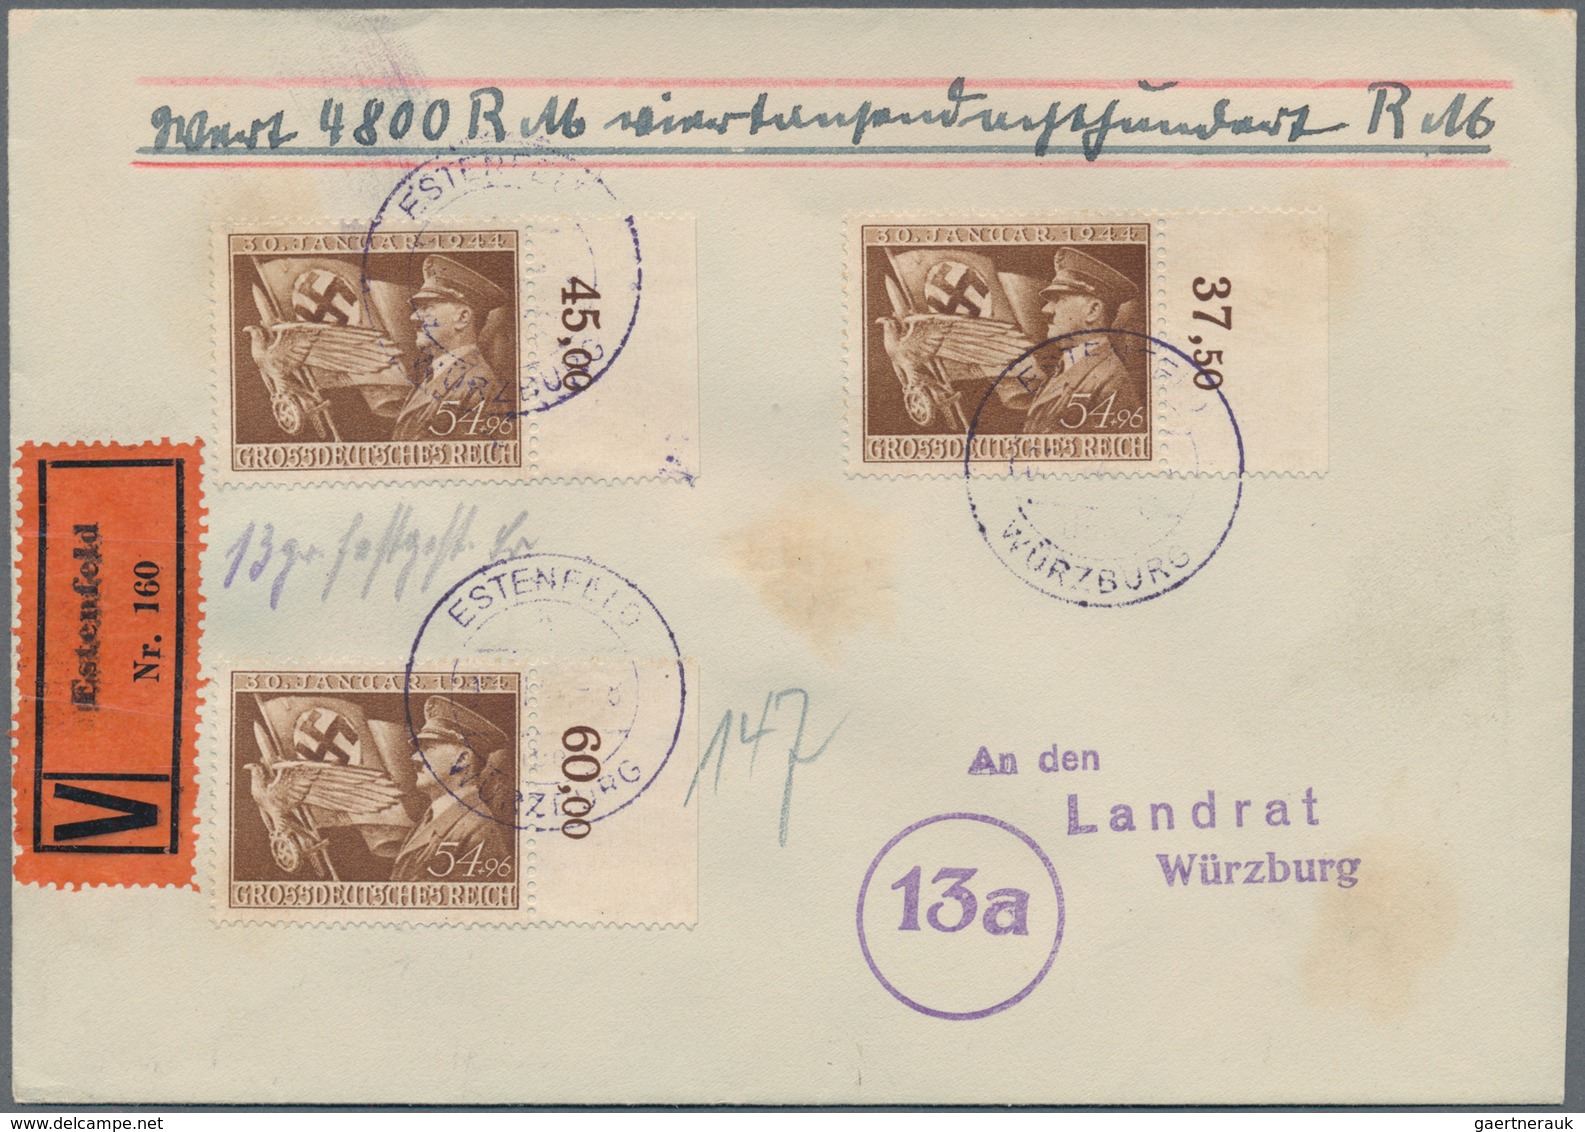 Deutsches Reich - 3. Reich: 1944, Lot von neun Wertbriefen mit portogerechten Mehrfachfrankaturen, d